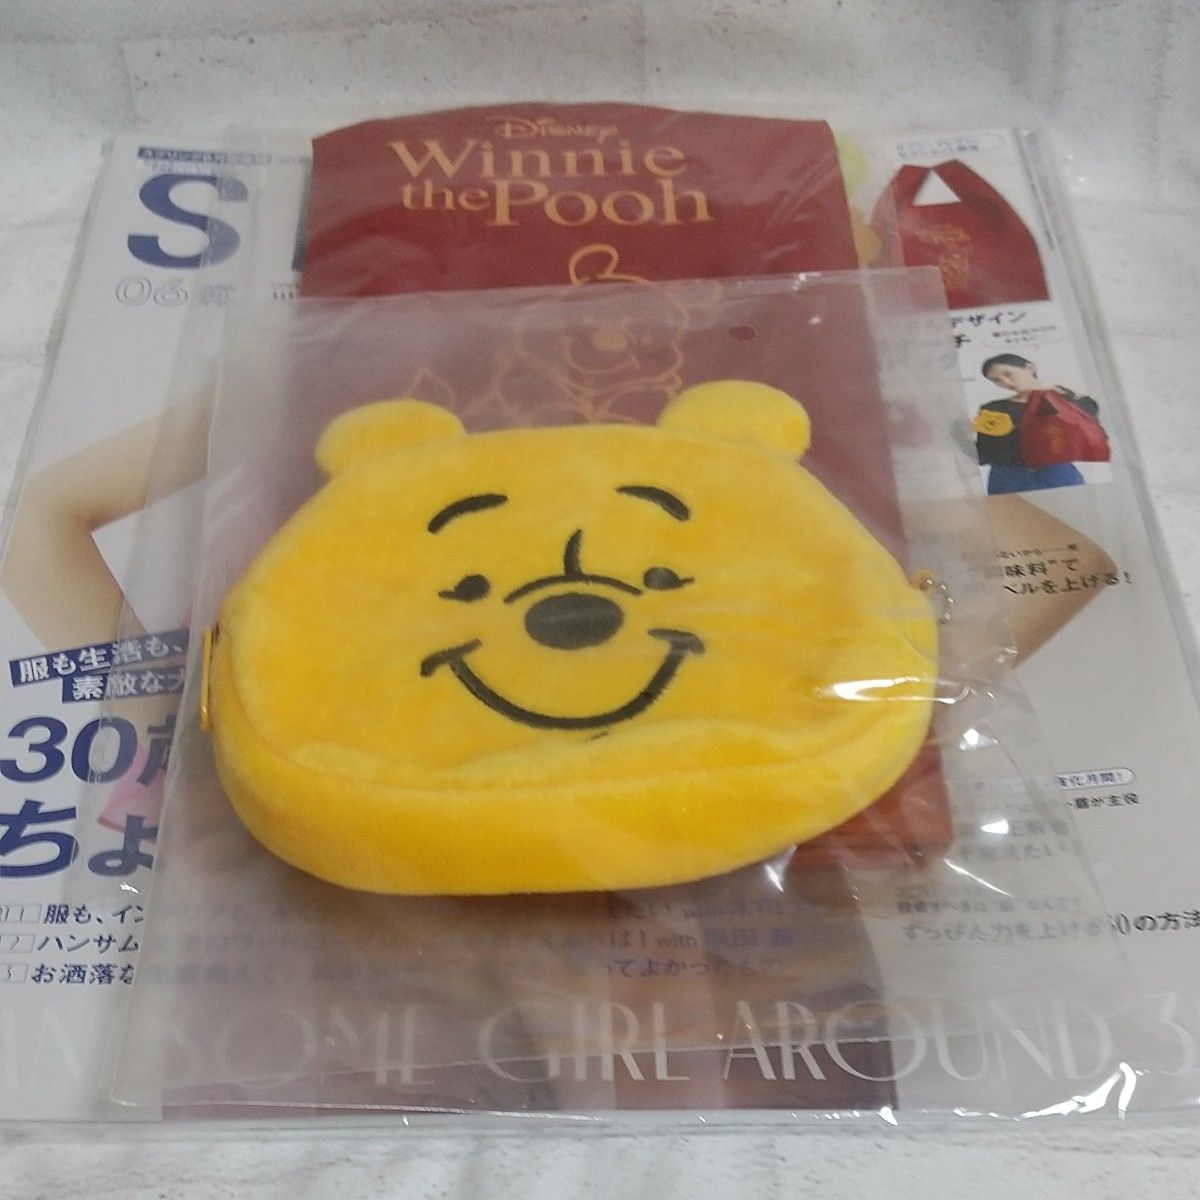 Winnie the Pooh エコバッグ＆ぬいぐるみポーチ、雑誌